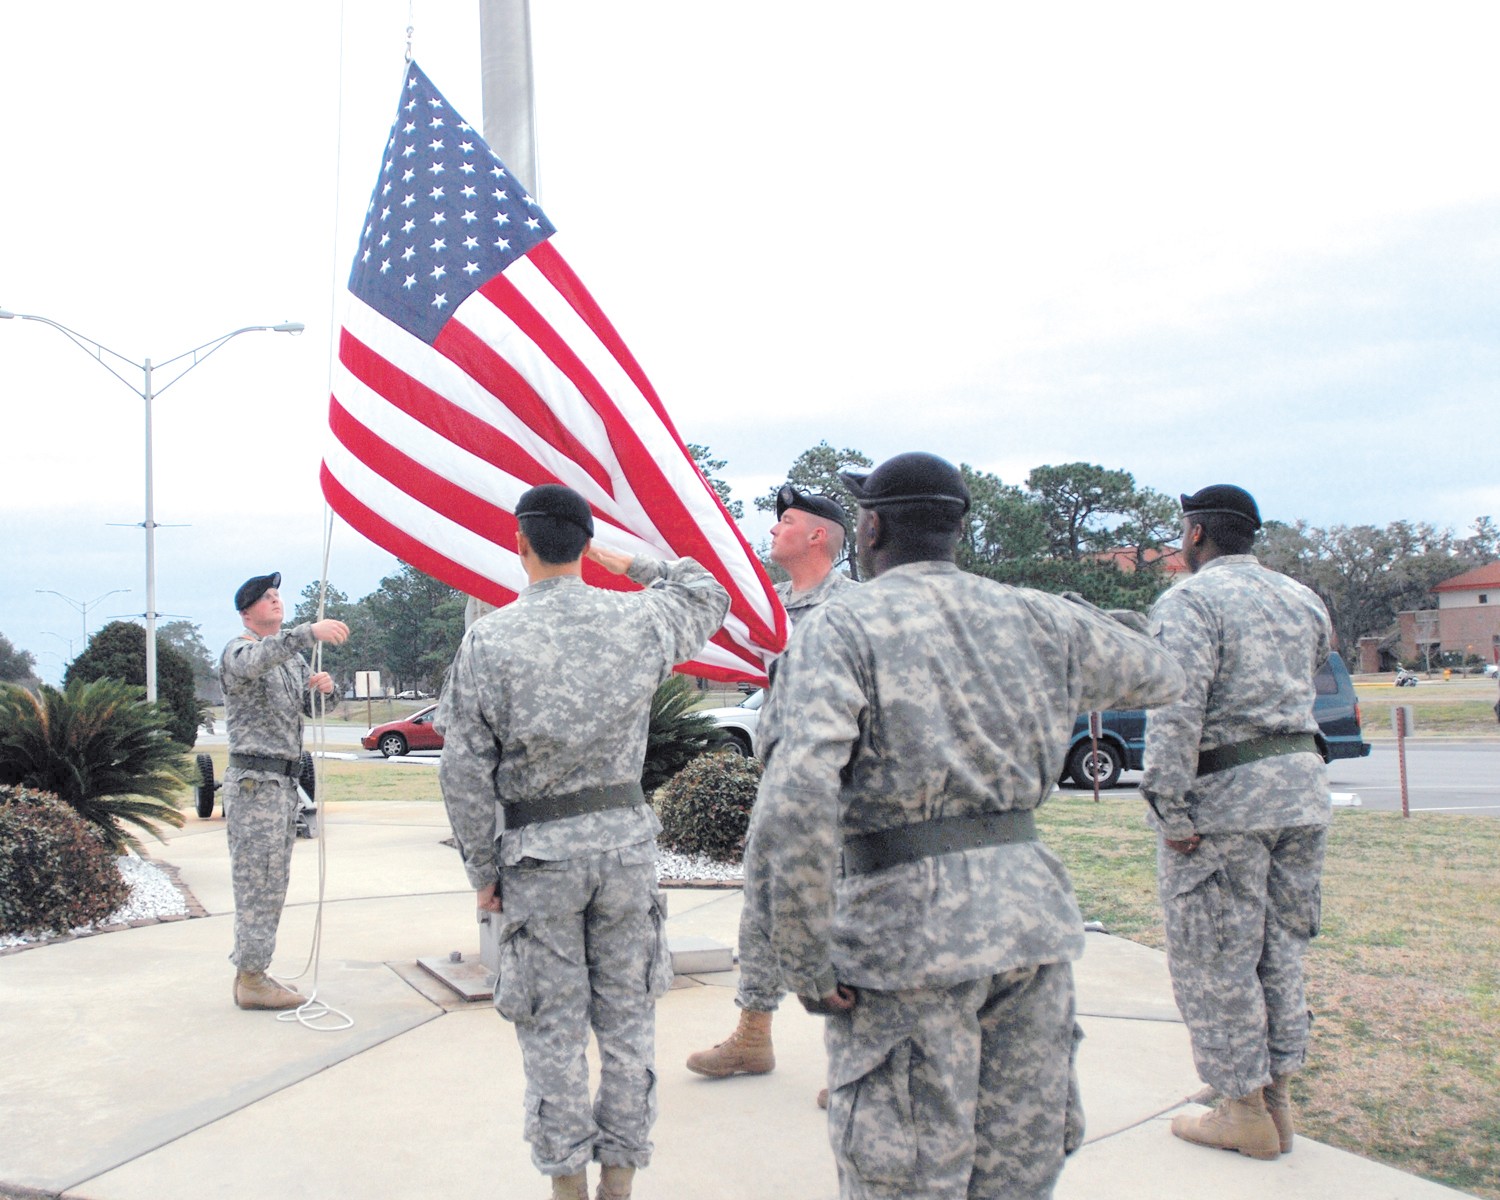 United States Flag Raising Procedures at Reveille